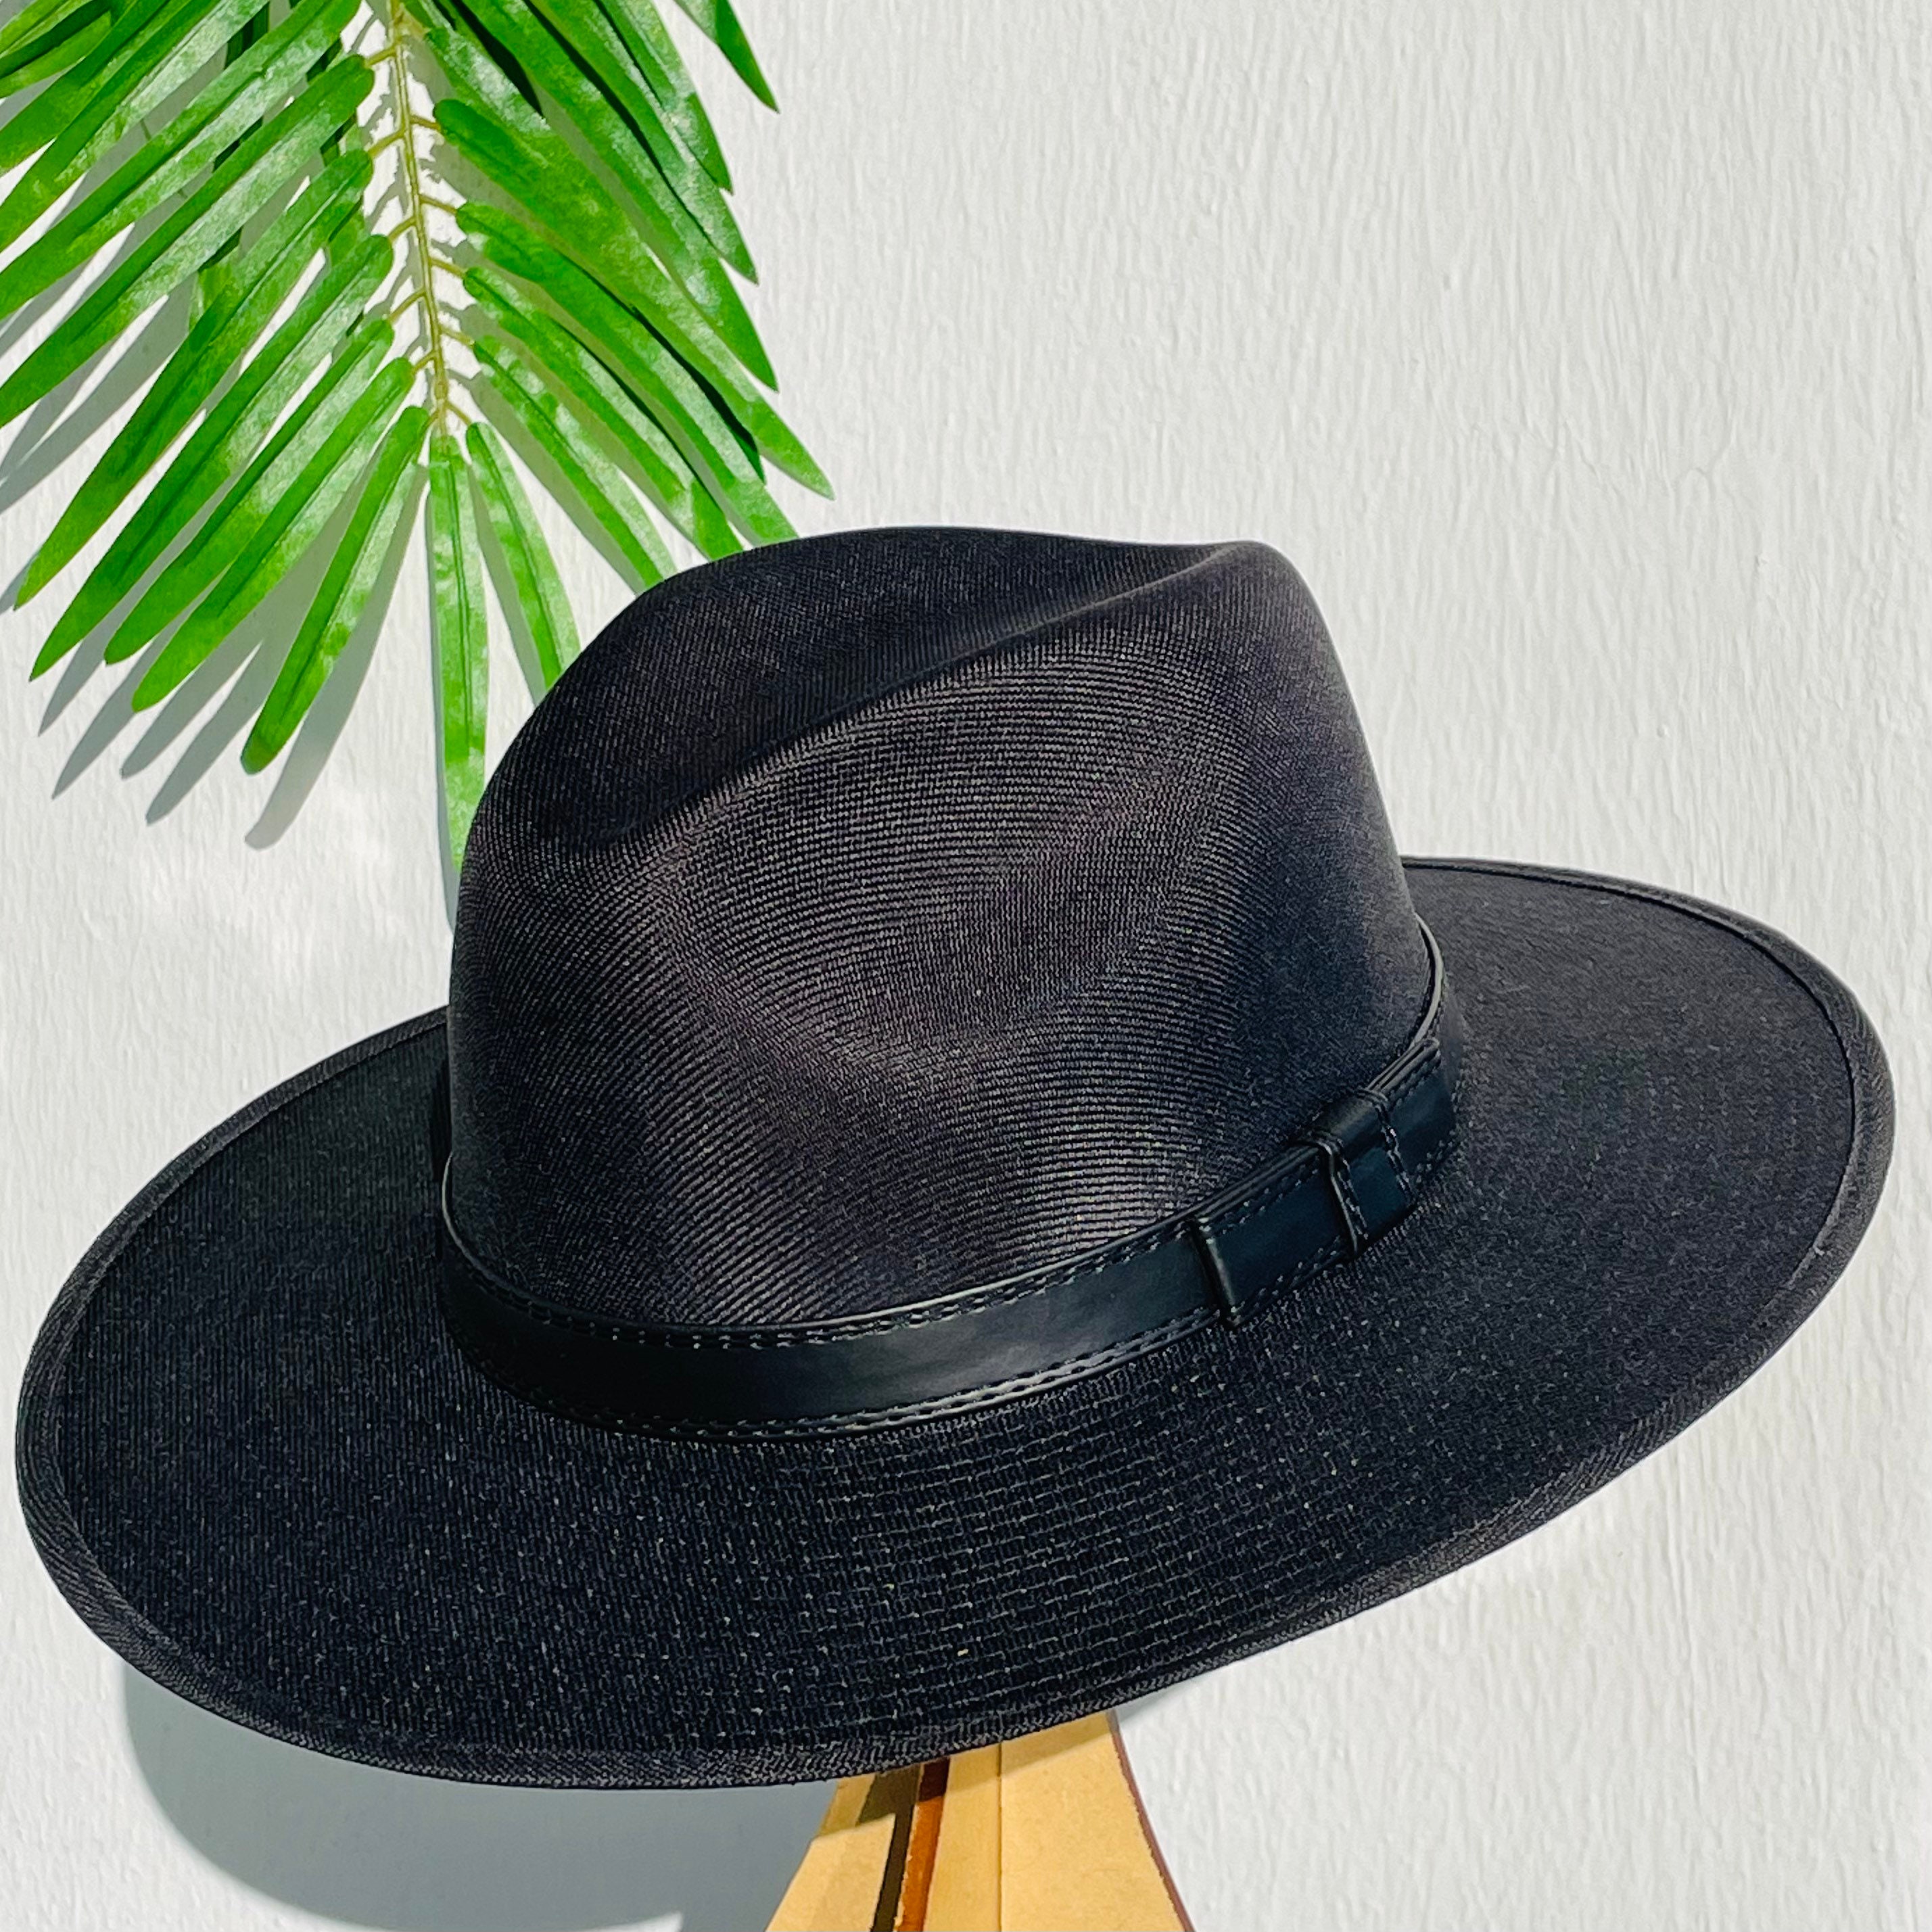 Buy Wide Brim Hat Men Online In India -  India